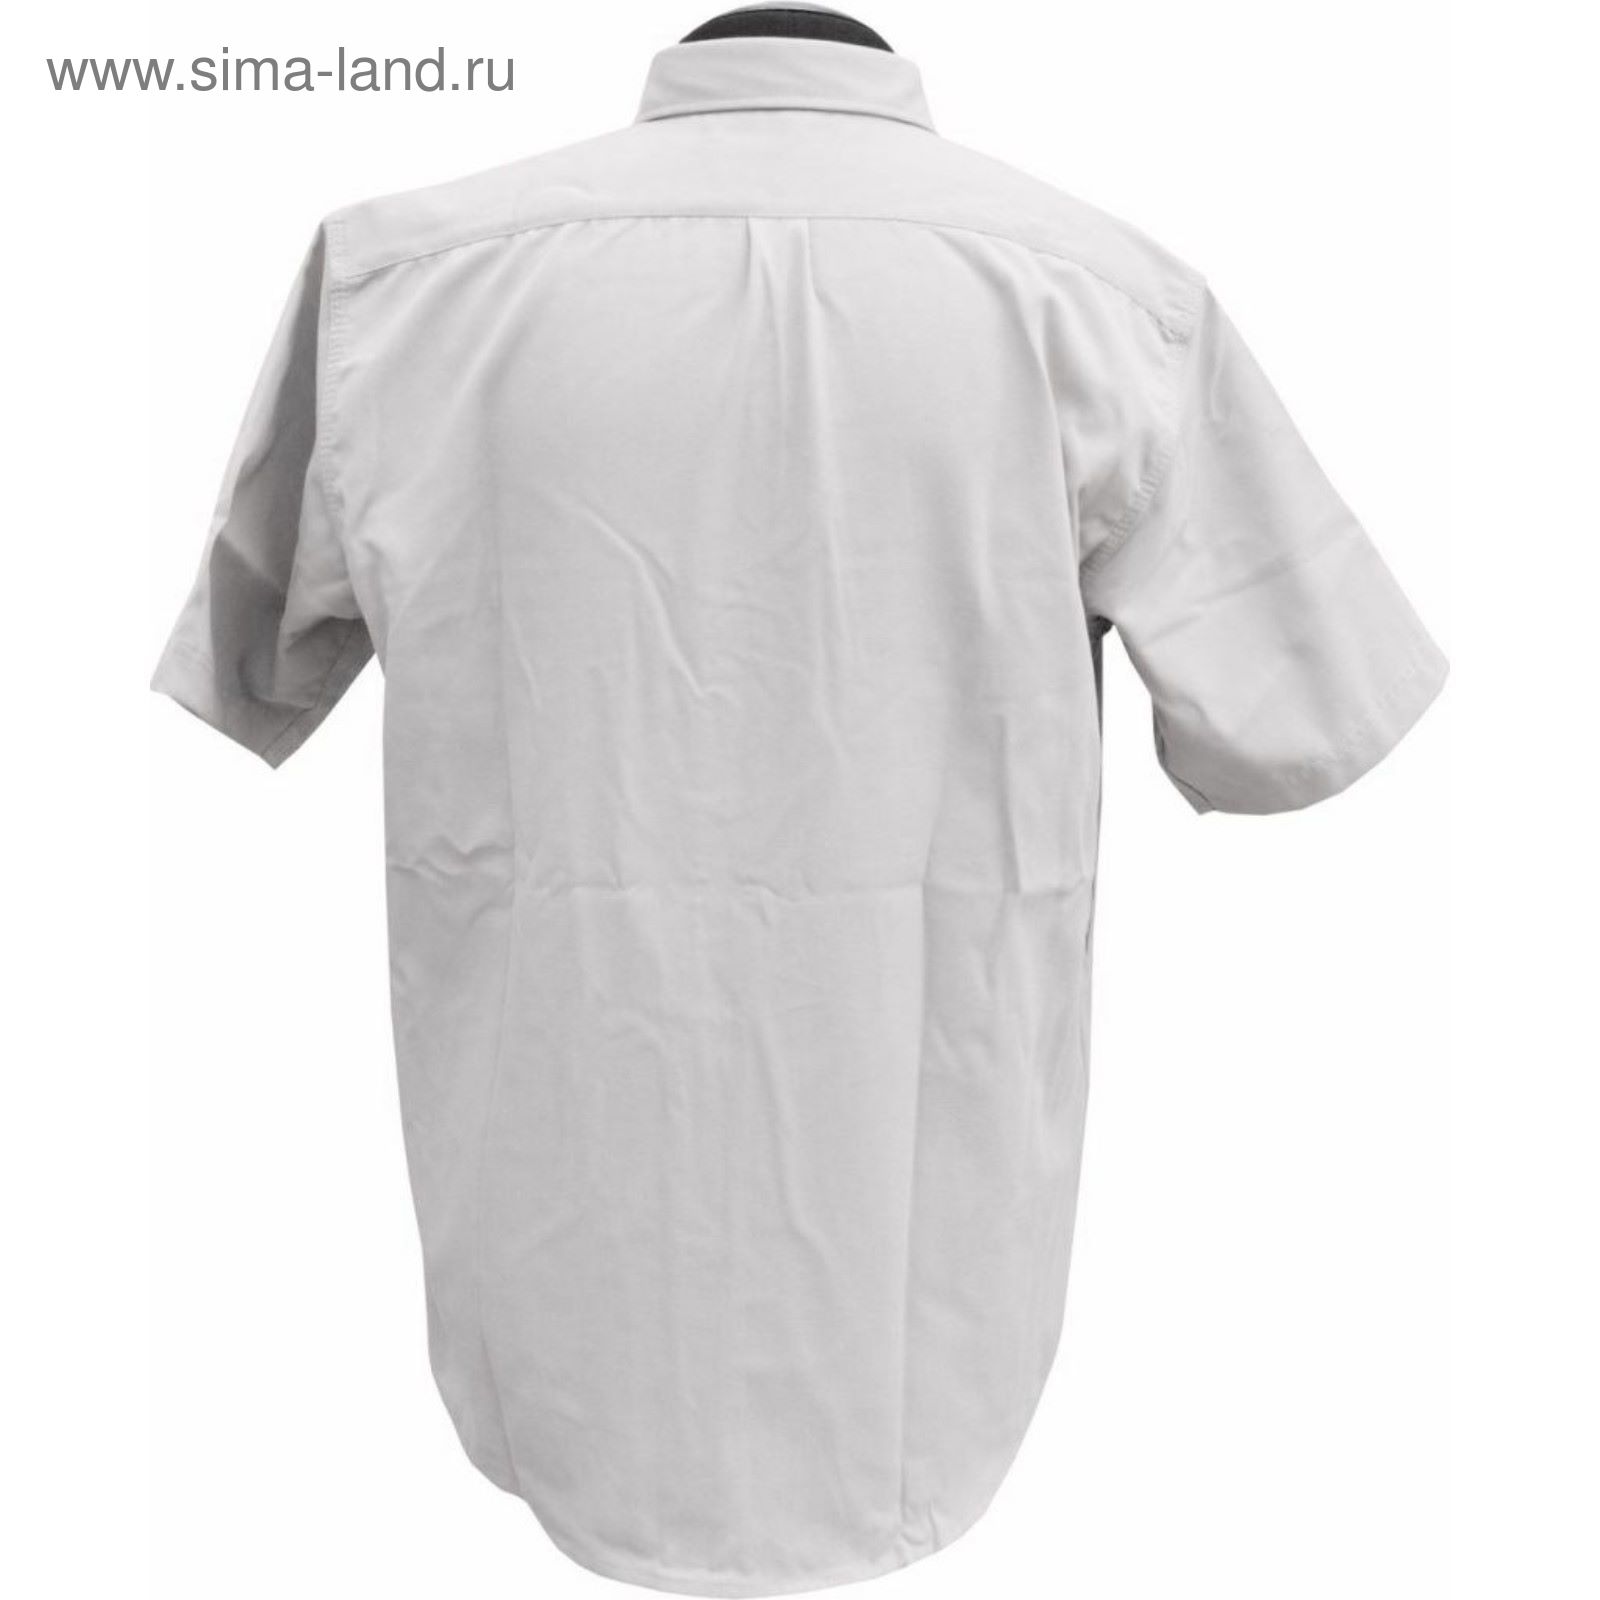 Рубашка с коротким рукавом (сафари) 46/170-176 р-р